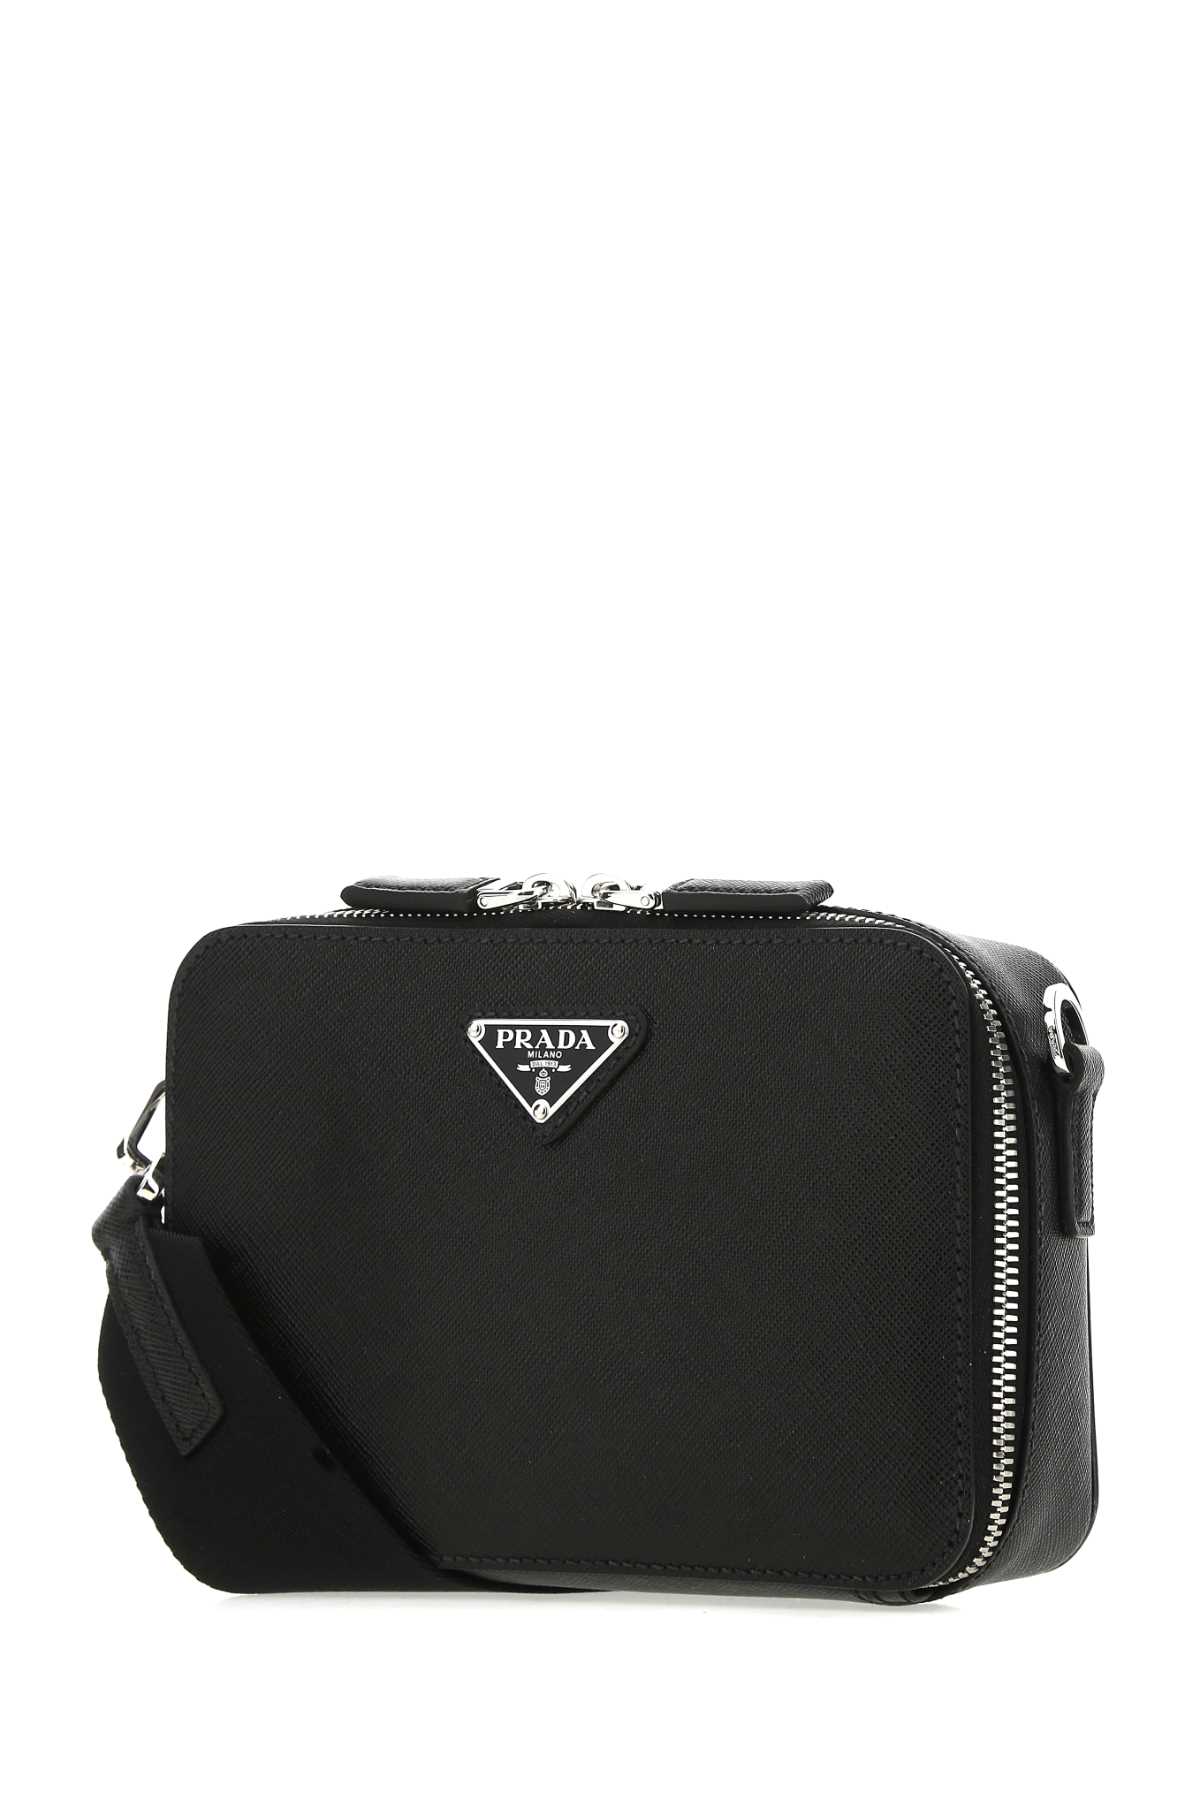 Prada Black Leather Crossbody Bag In Nero